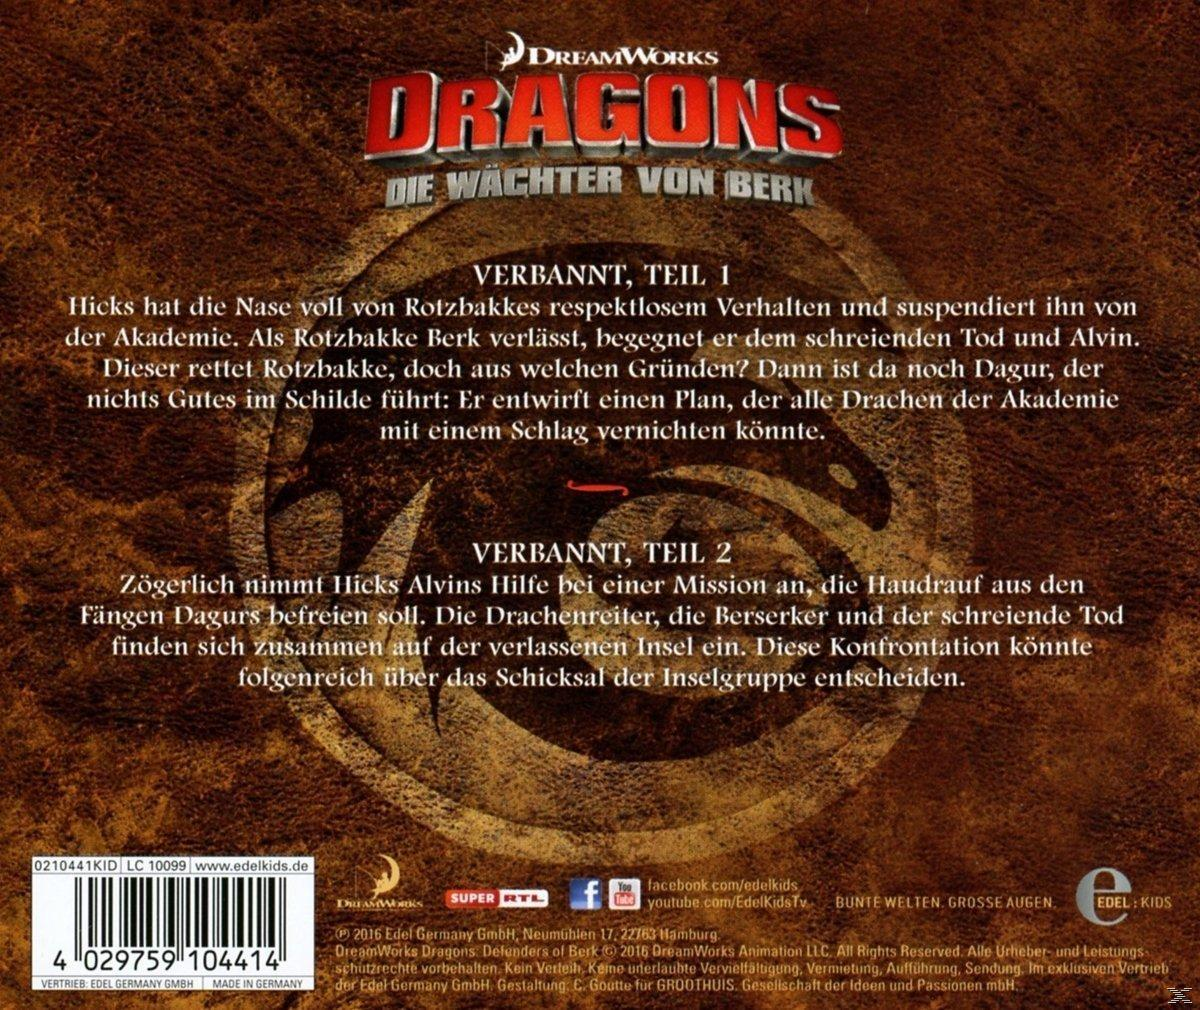 Hörspiel Von Wächter (18)Original Z.Tv-Serie-Drachentausch - Dragons-die (CD) - Berk